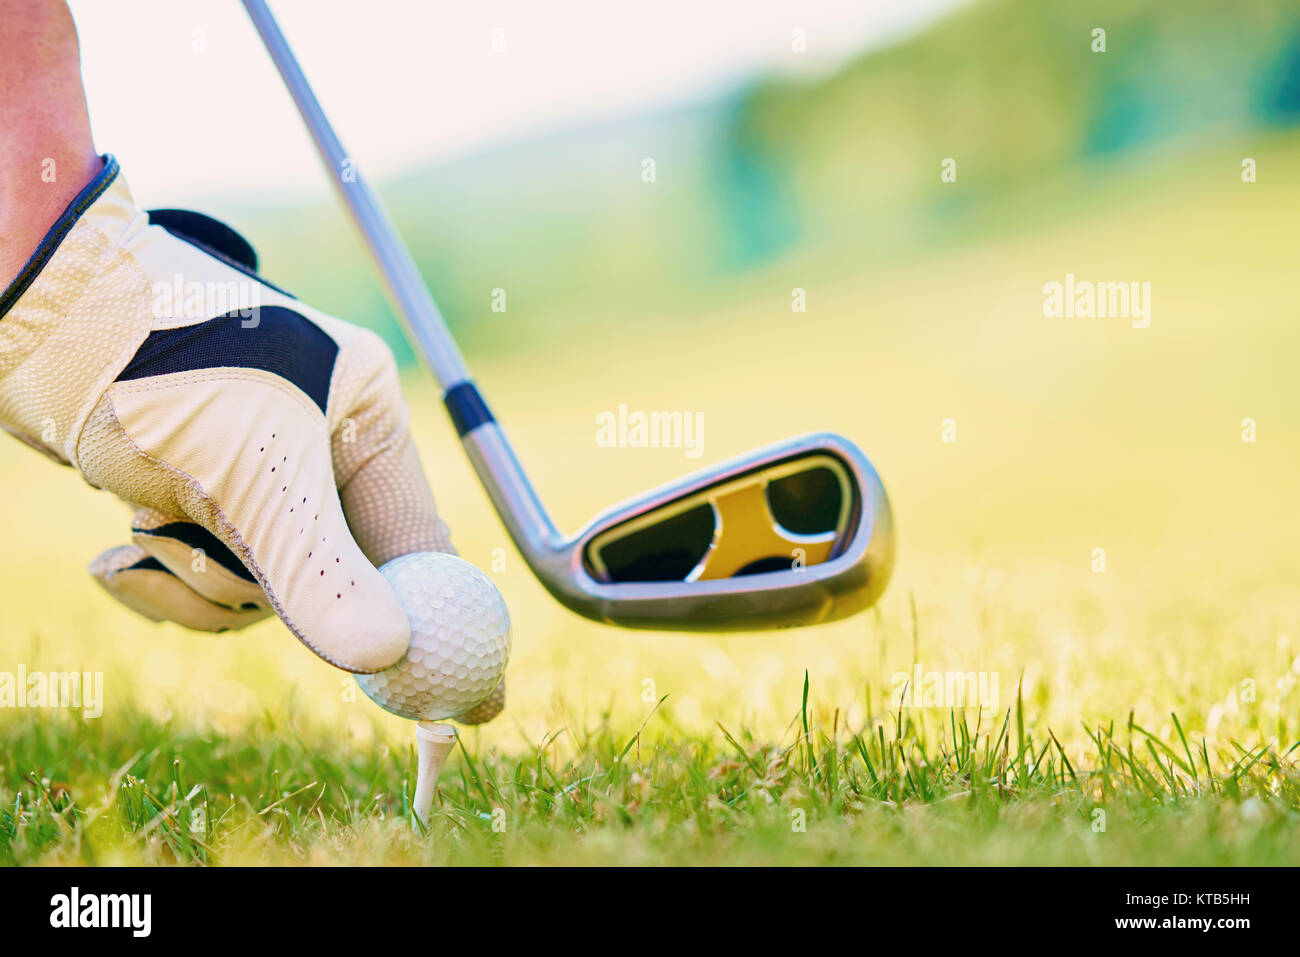 Jeune personne jouer au golf sur une journée ensoleillée Banque D'Images